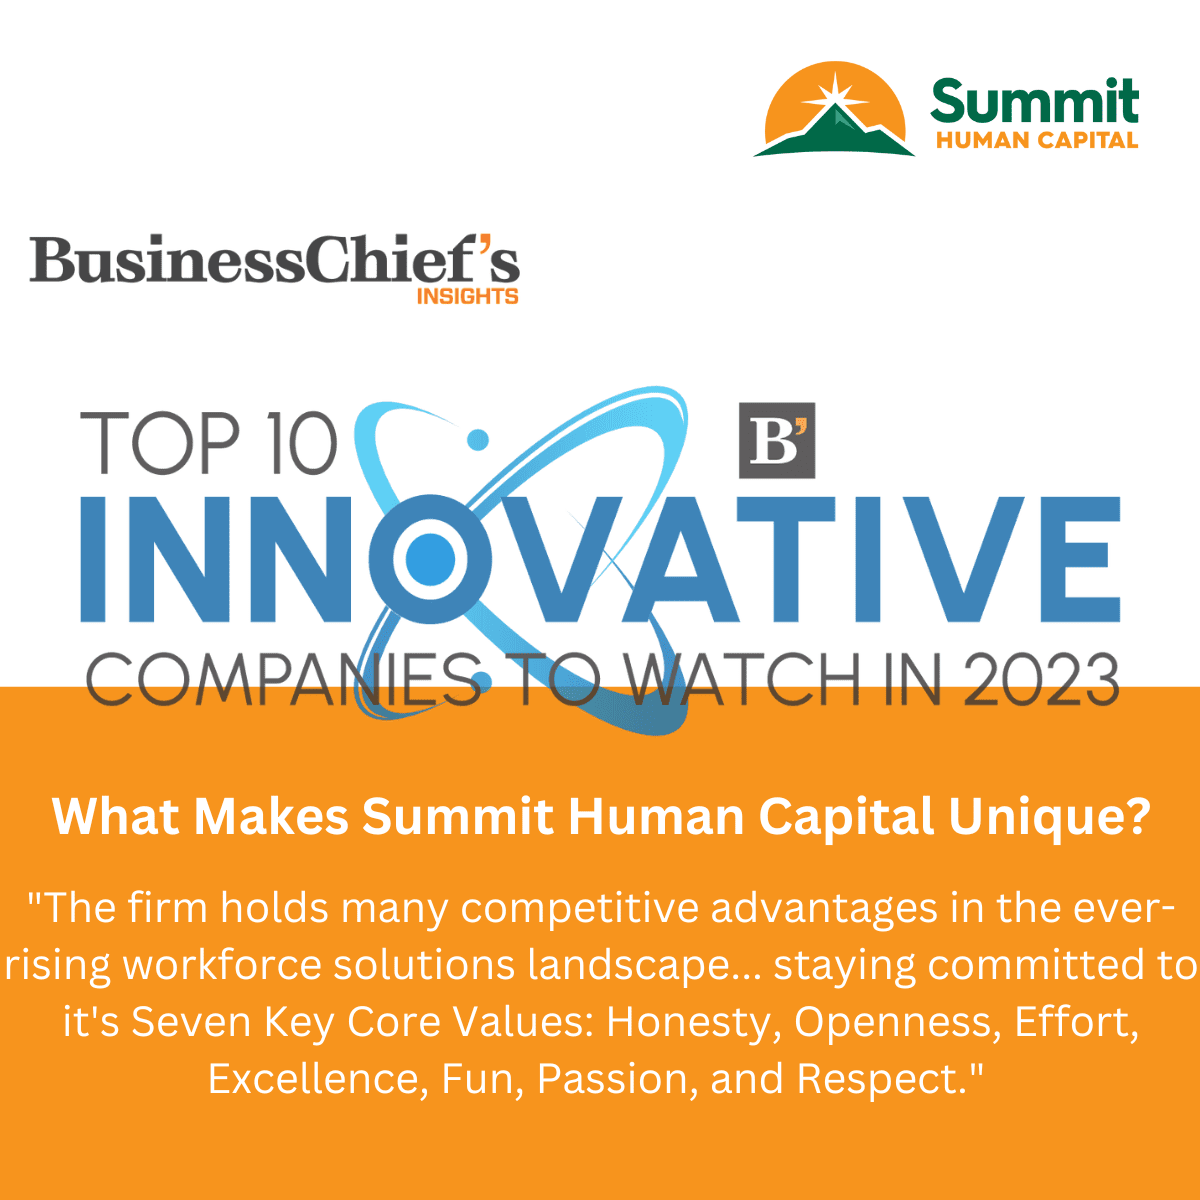 Summit Human Capital: World-Class Culture